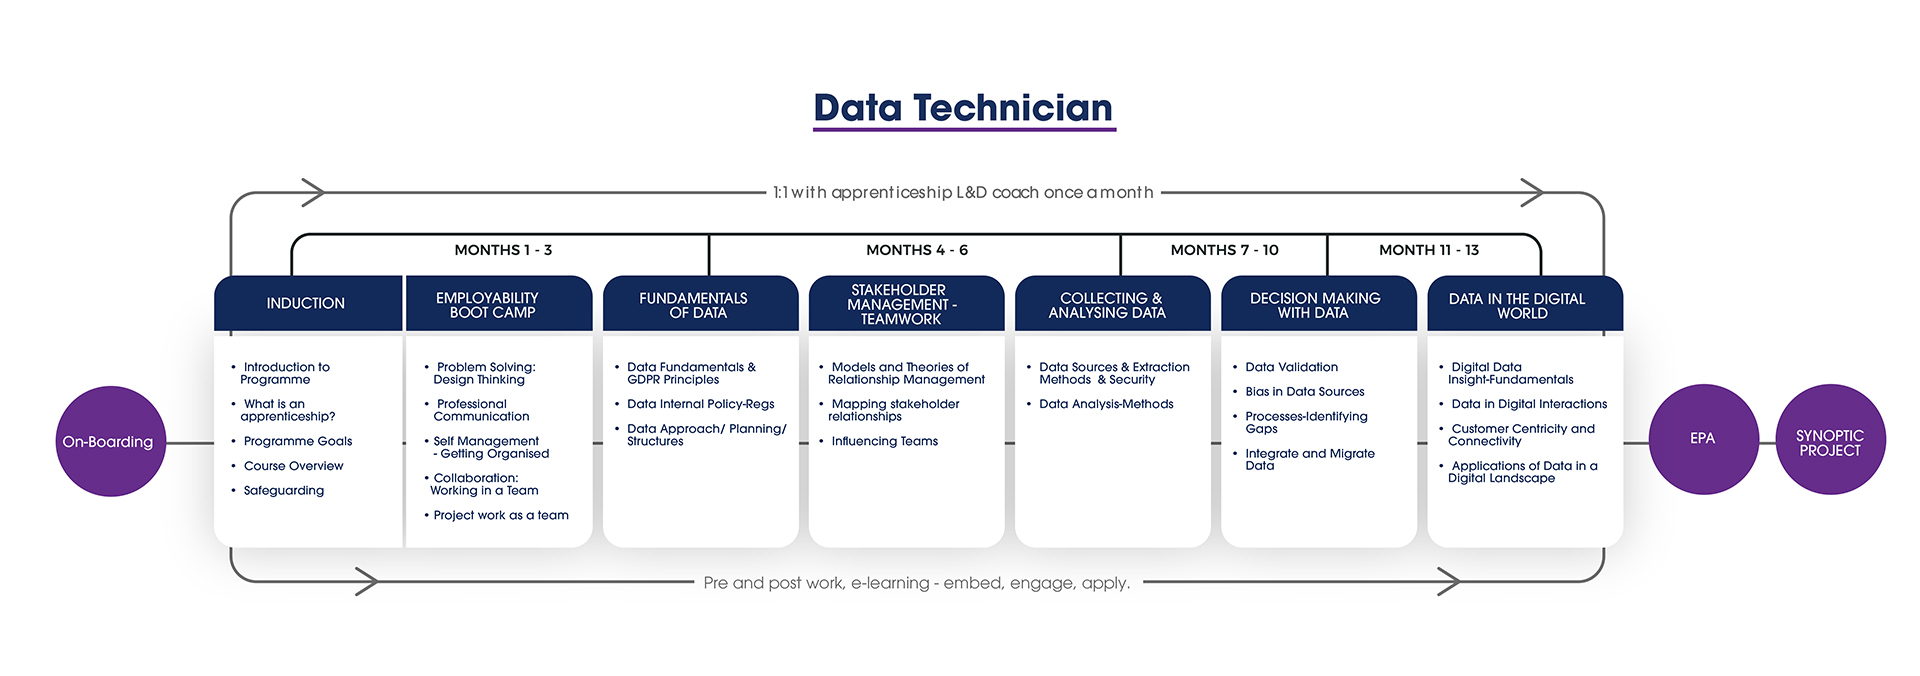 Data Technician Programme Roadmap